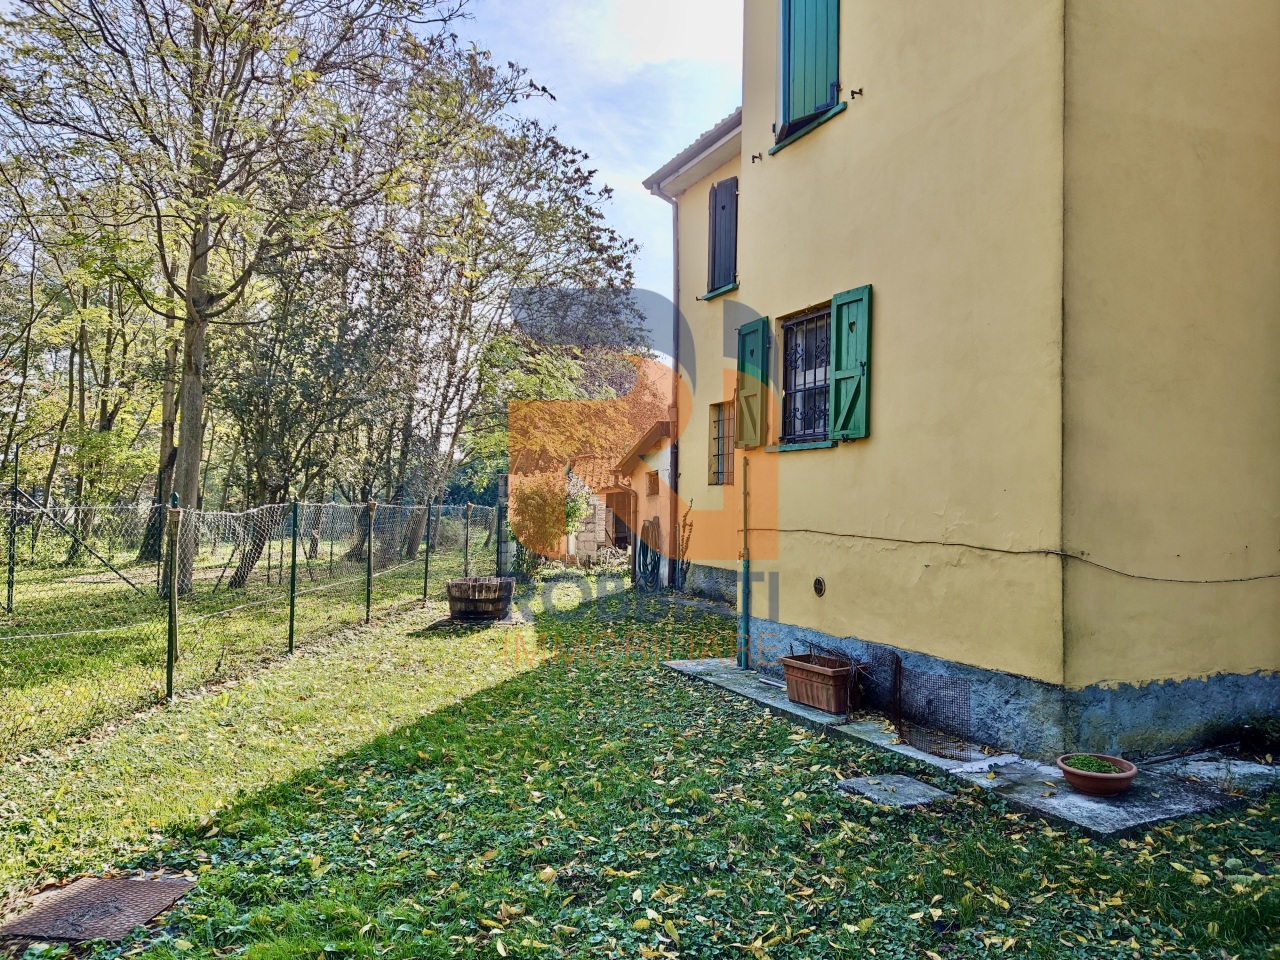 Villa in vendita a Sommo, 3 locali, prezzo € 90.000 | PortaleAgenzieImmobiliari.it